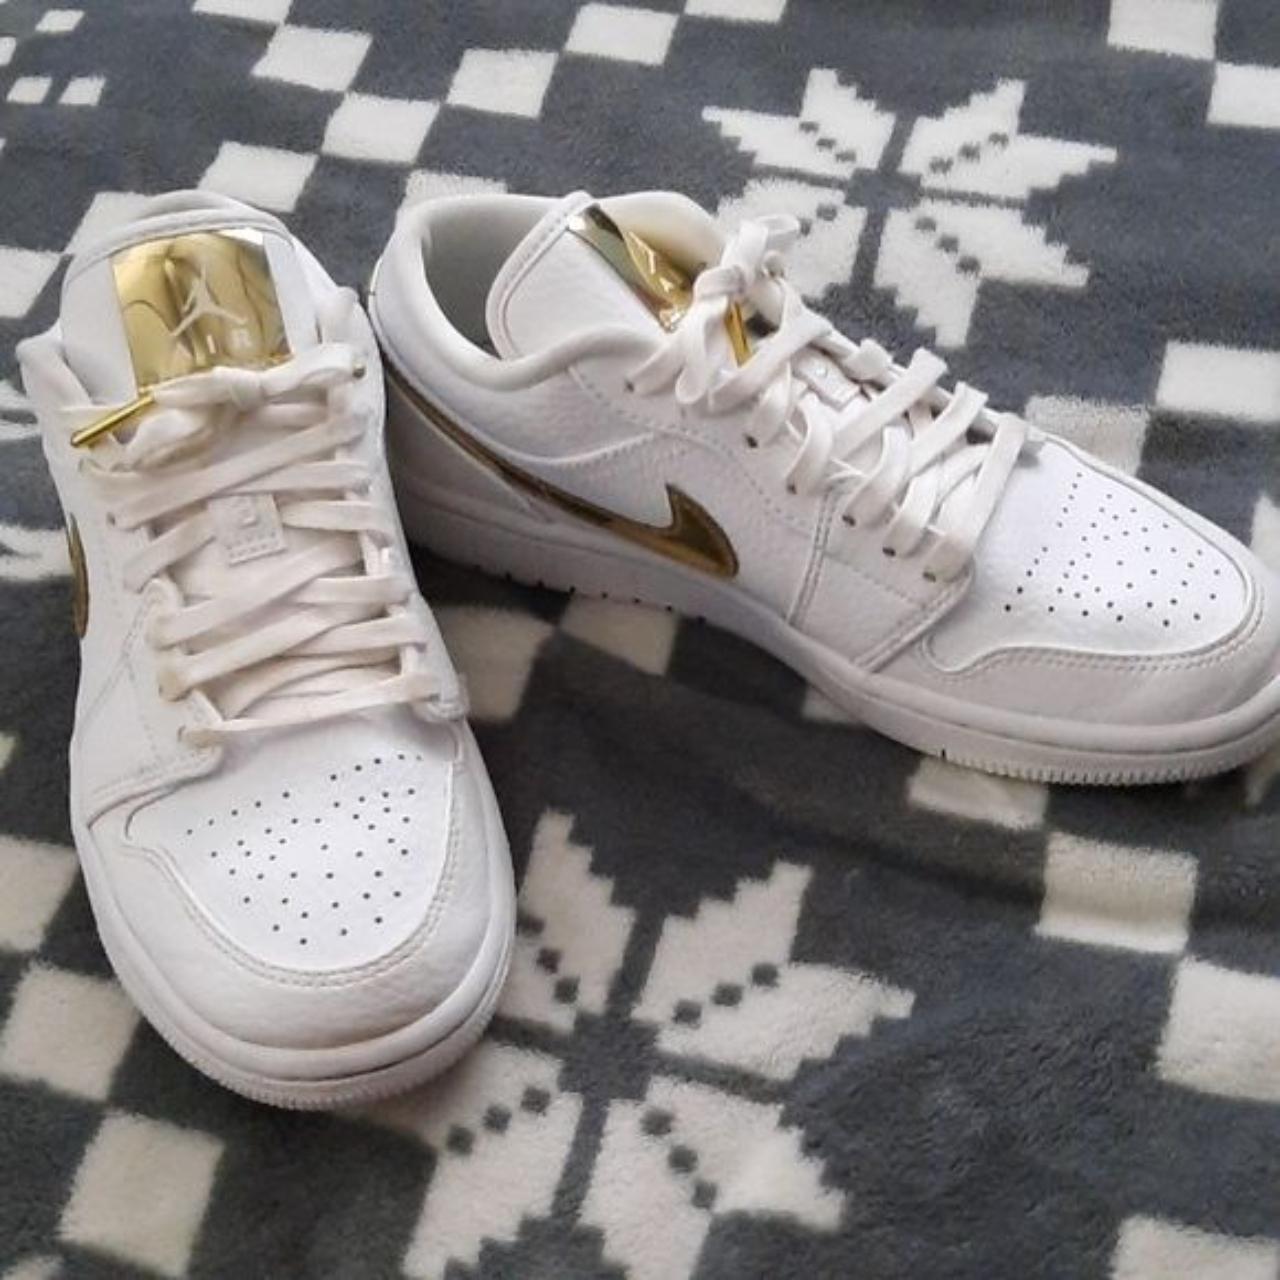 Nike Air Jordan 1 Low SE White Metallic Gold CZ... - Depop